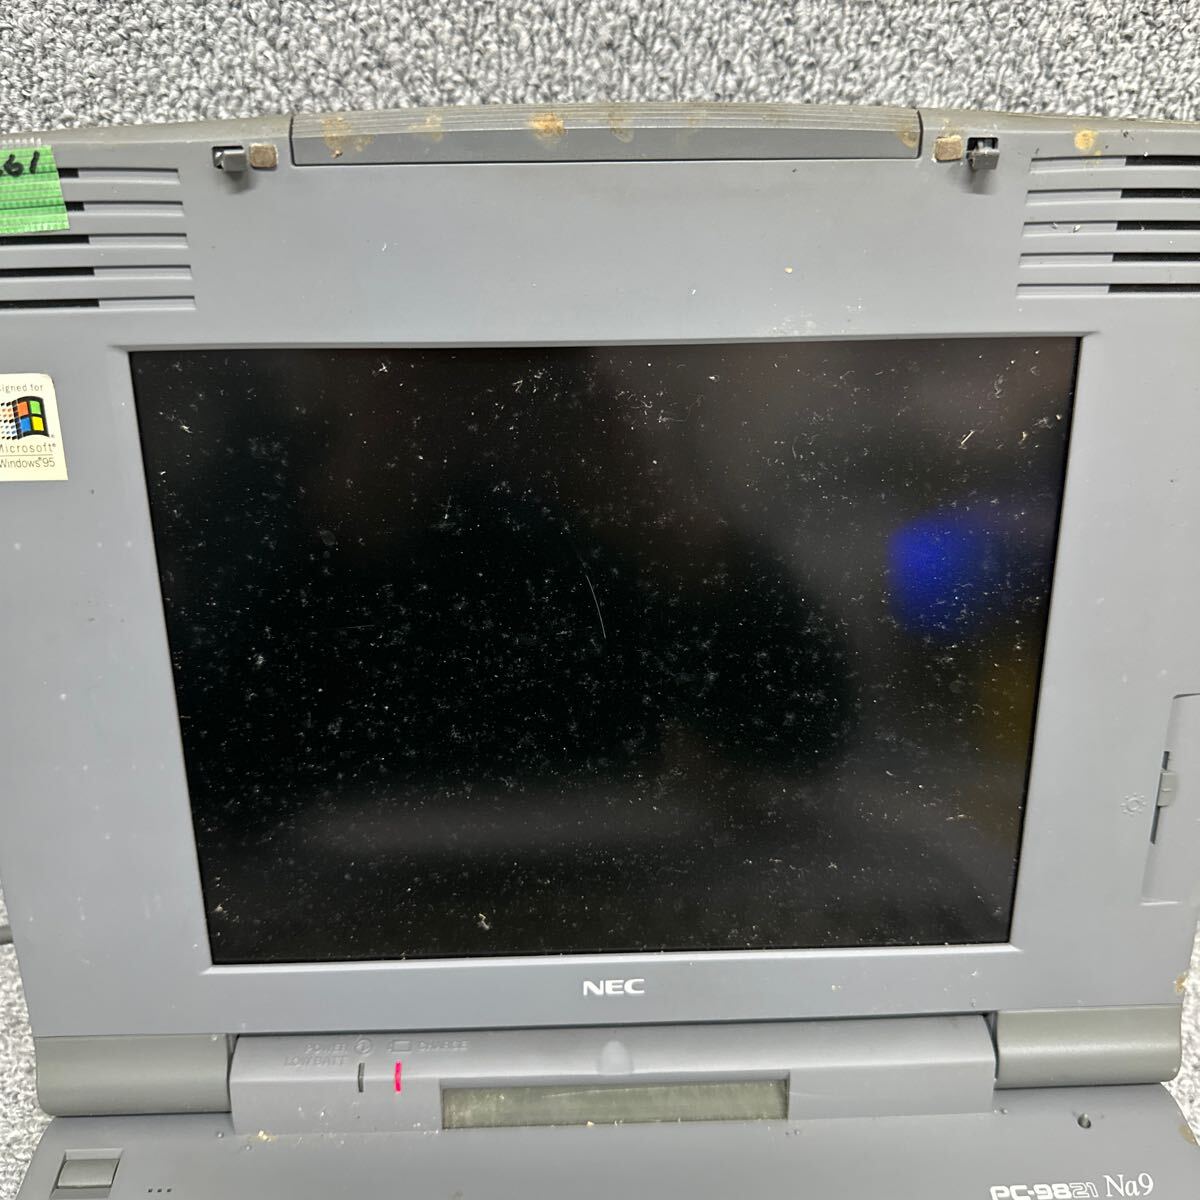 PCN98-1661 супер-скидка PC98 ноутбук NEC PC-9821Na9/H8 электризация только подтверждено Junk включение в покупку возможность 